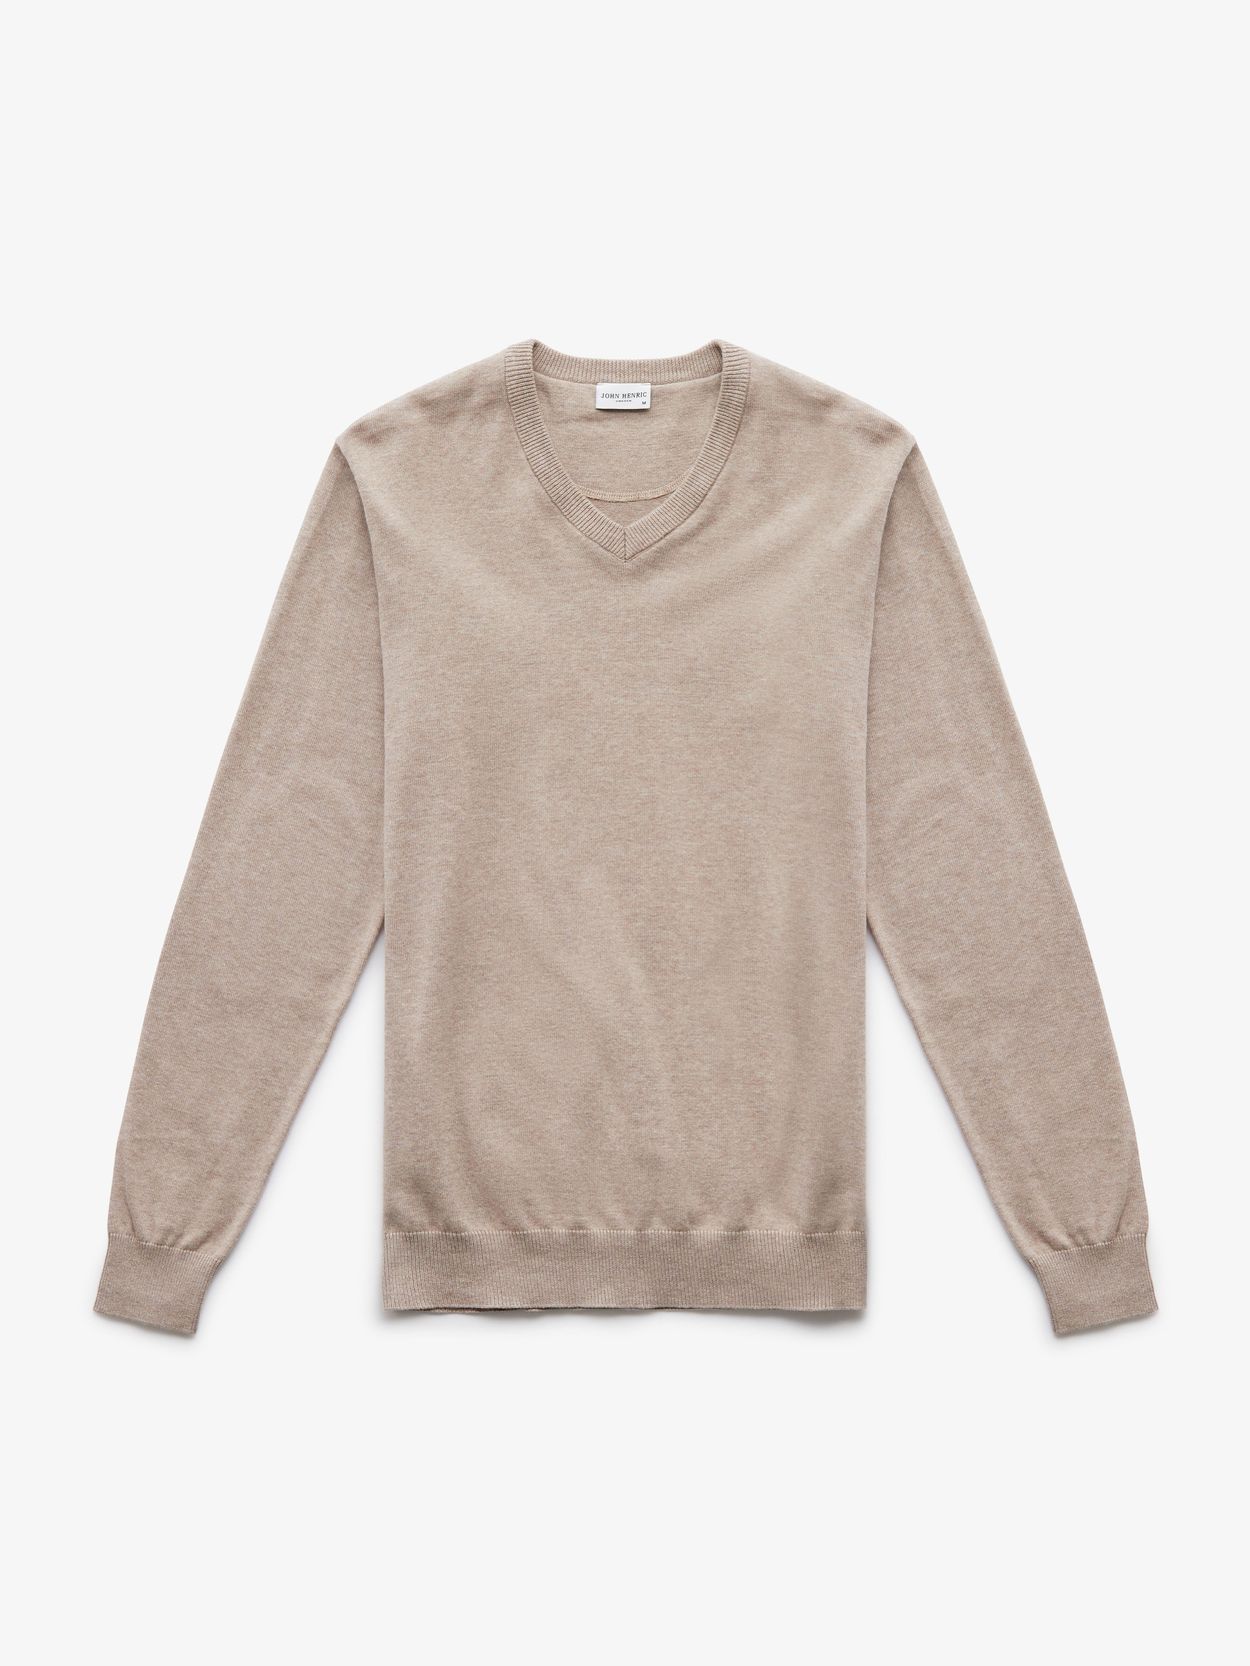 Beige Sweater Cotton